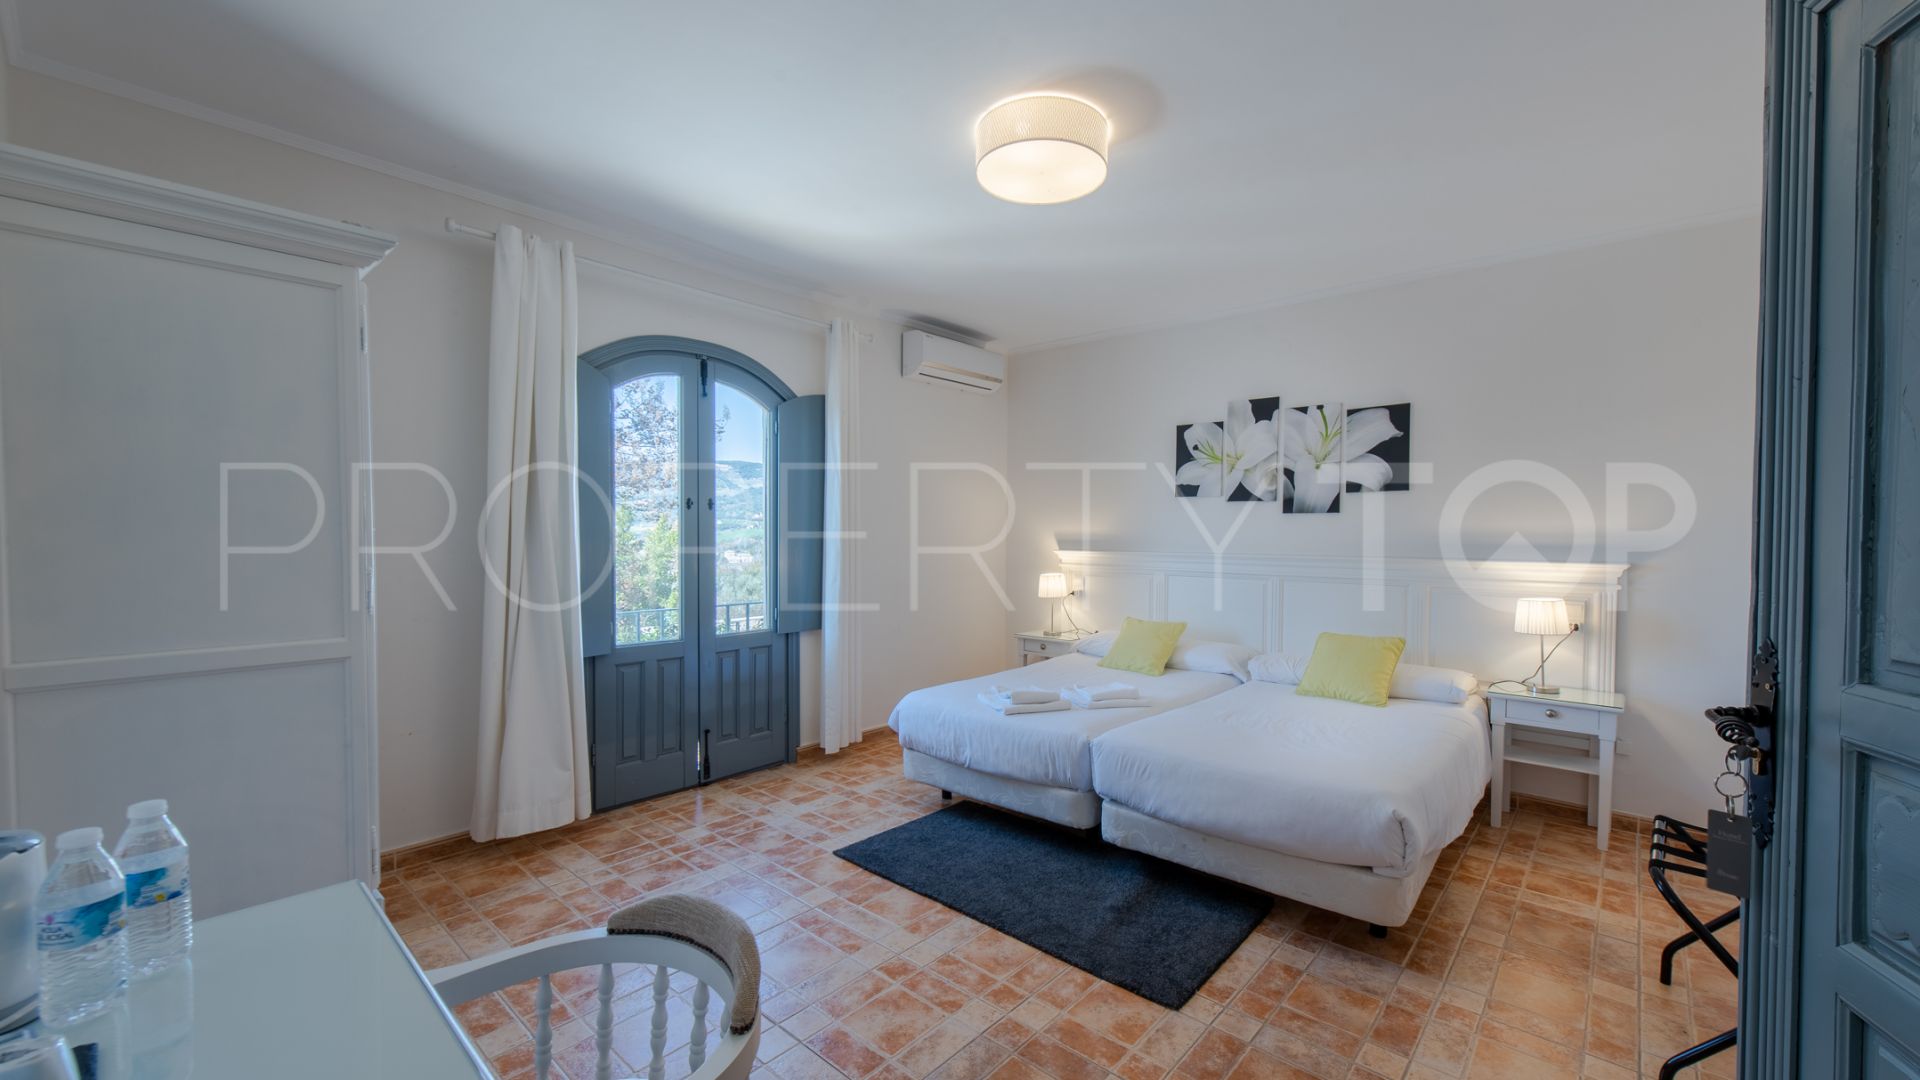 15 bedrooms Ronda cortijo for sale